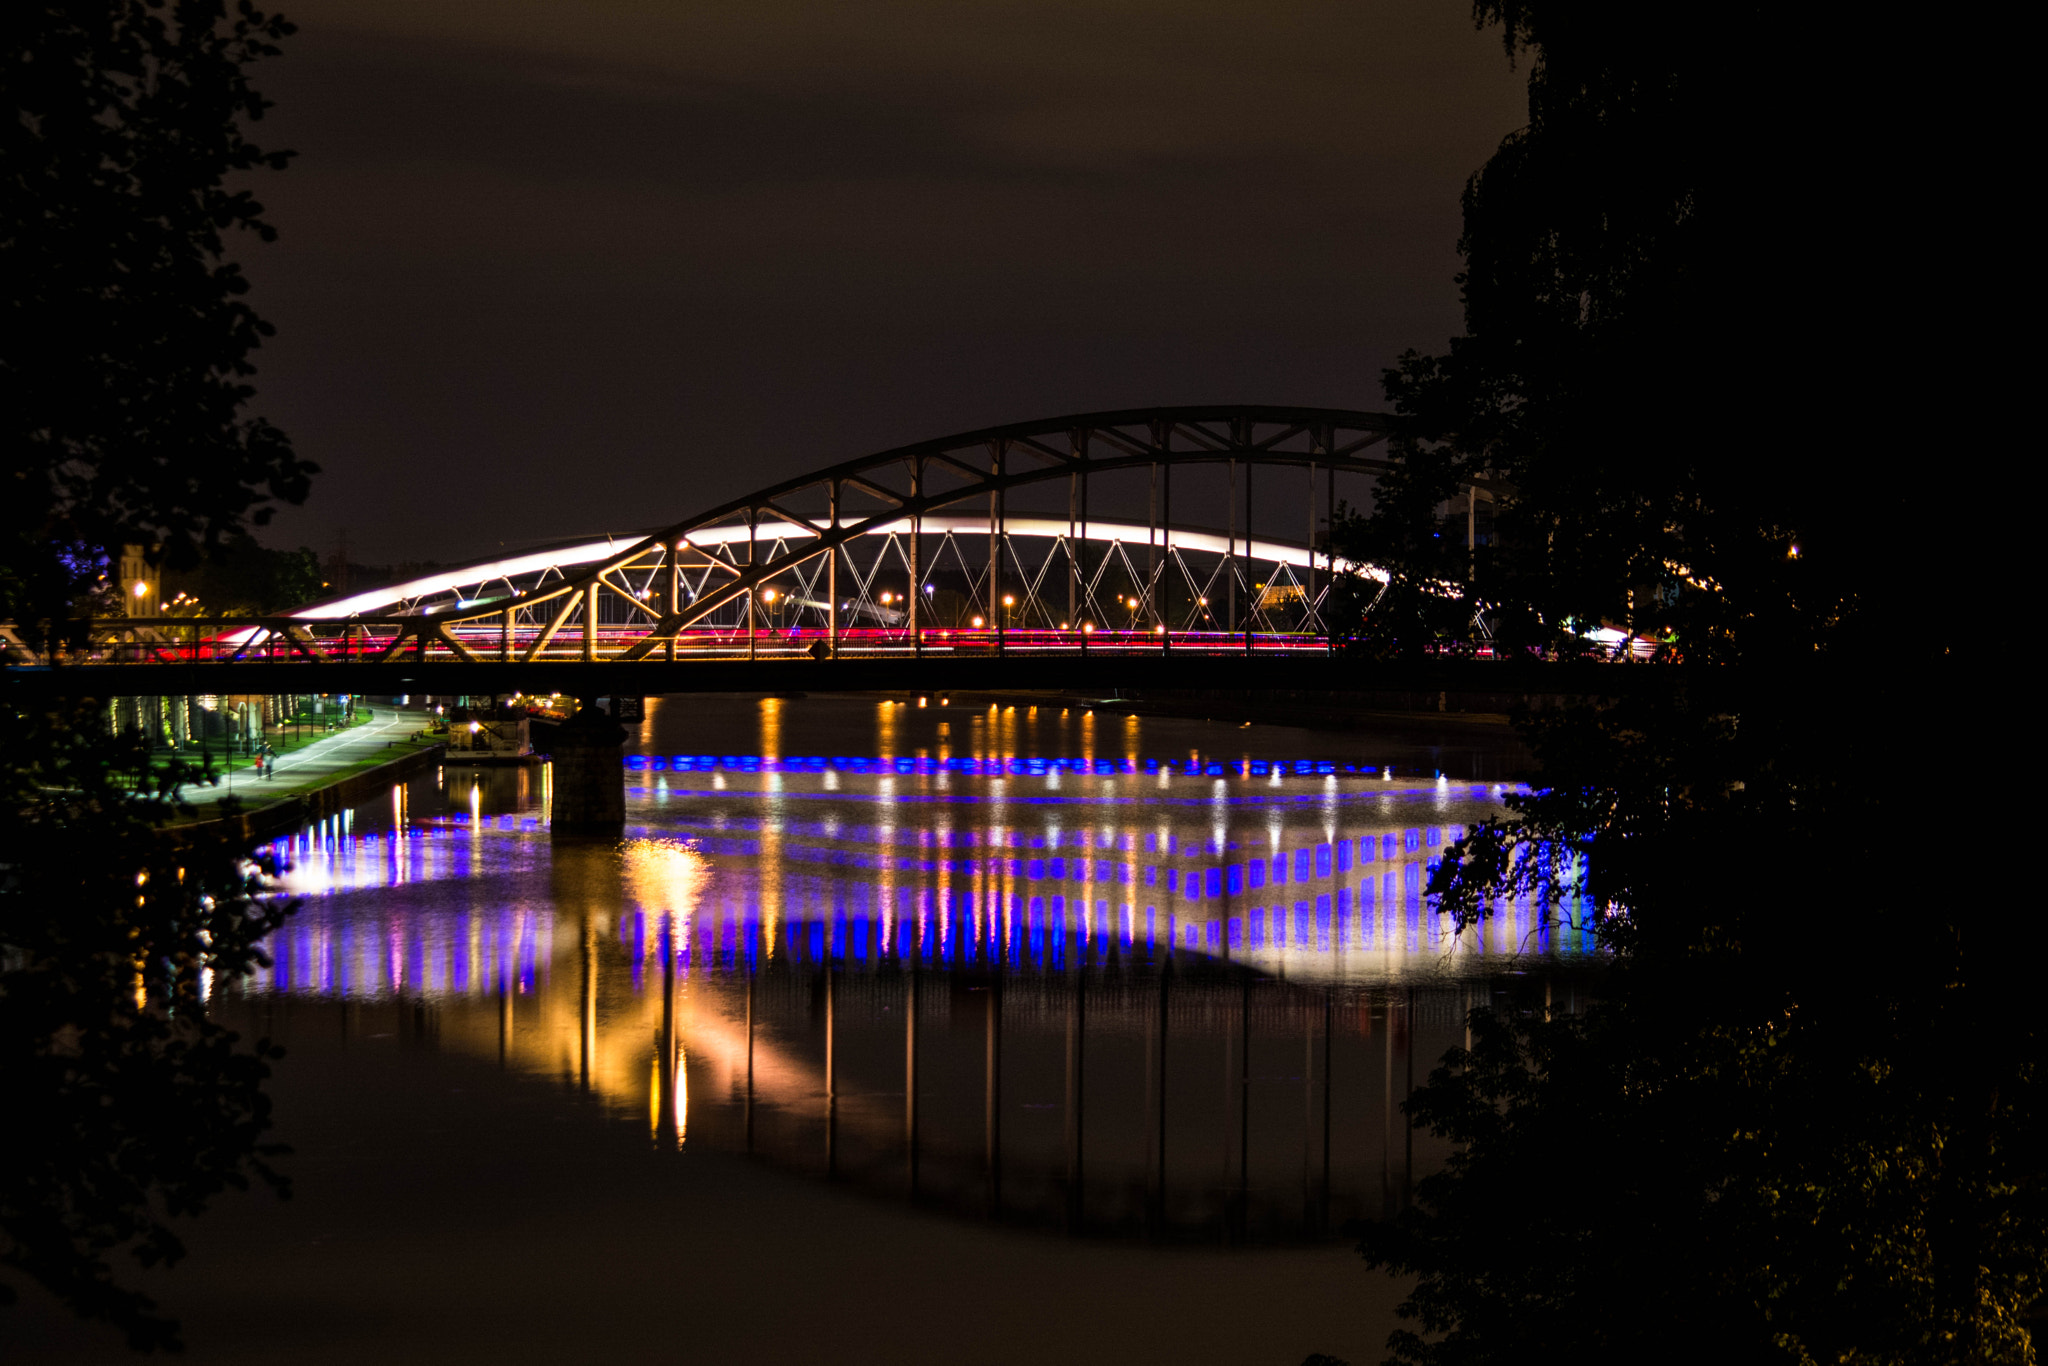 Nikon D5200 + AF-S DX Nikkor 18-55mm f/3.5-5.6G VR II + 2.8x sample photo. Walking bridge at night photography